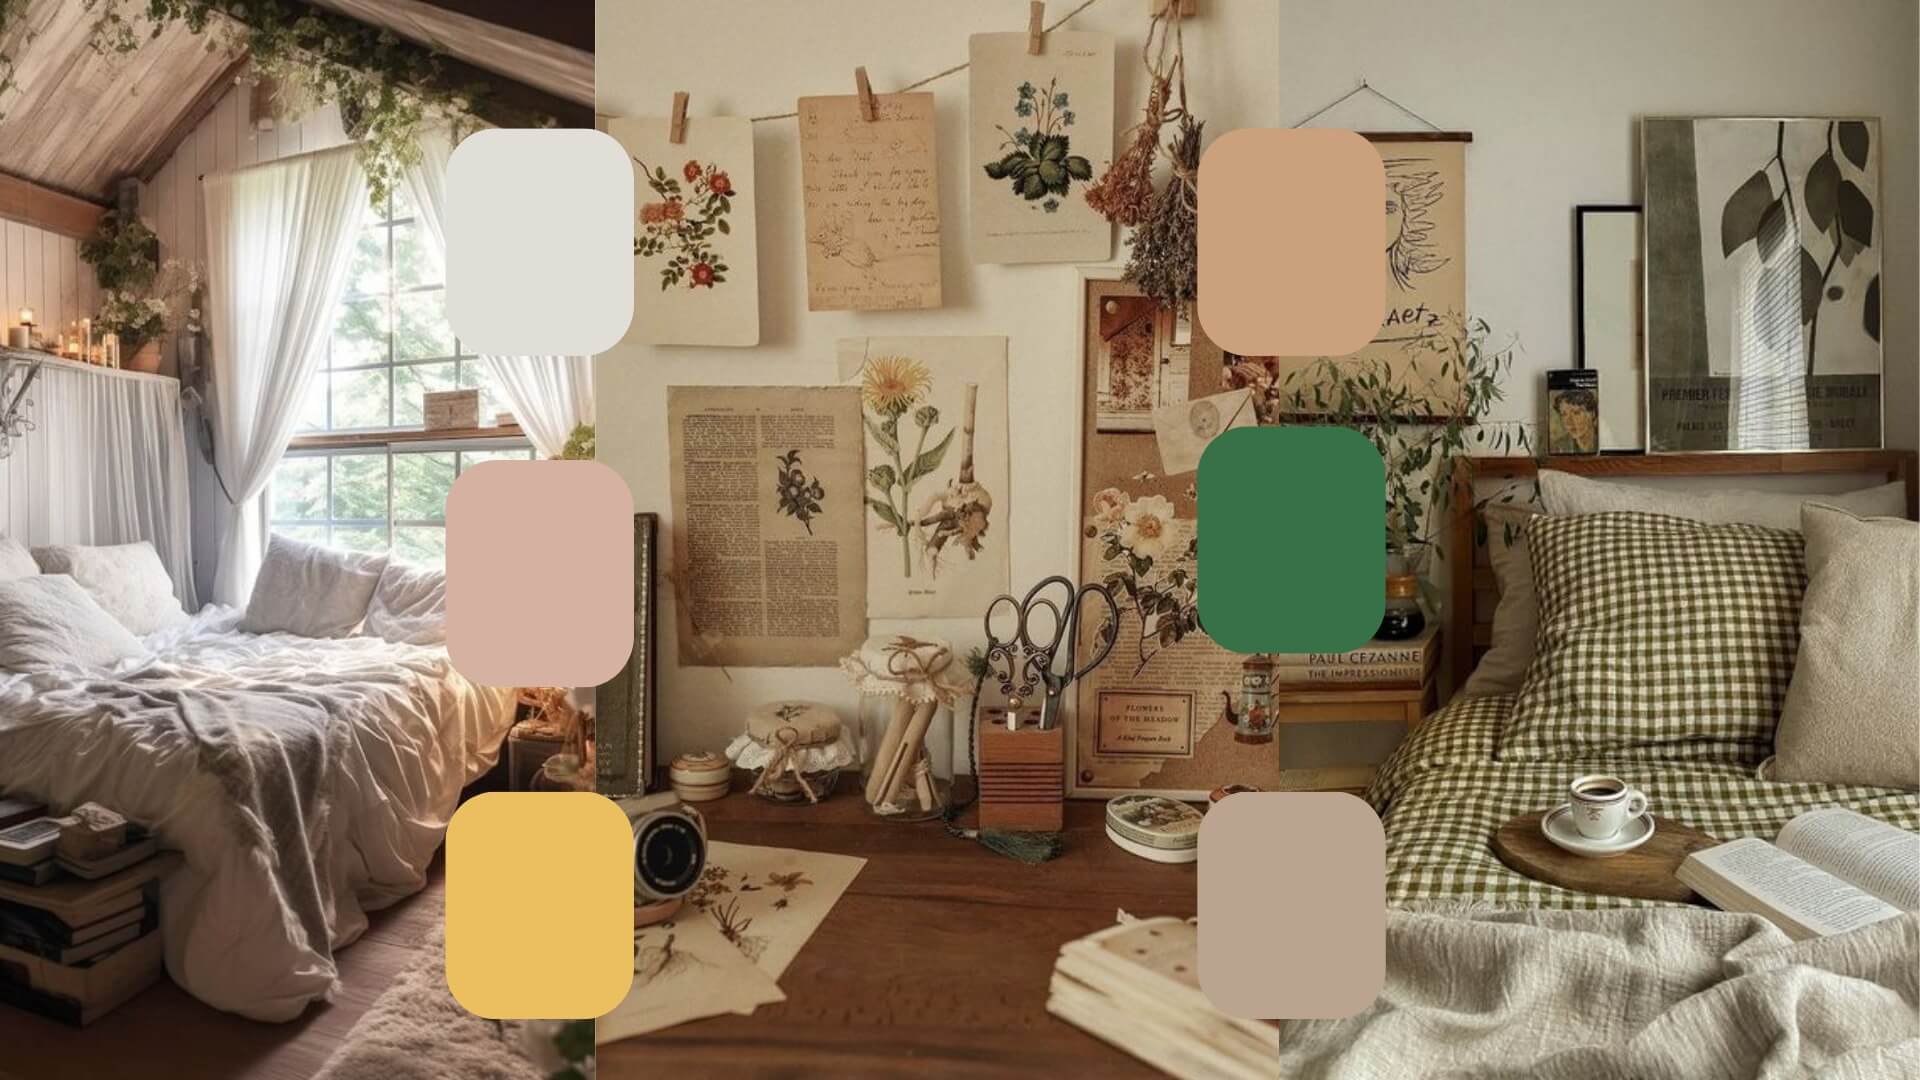 cottagecore aesthetic bedroom decorations color palette